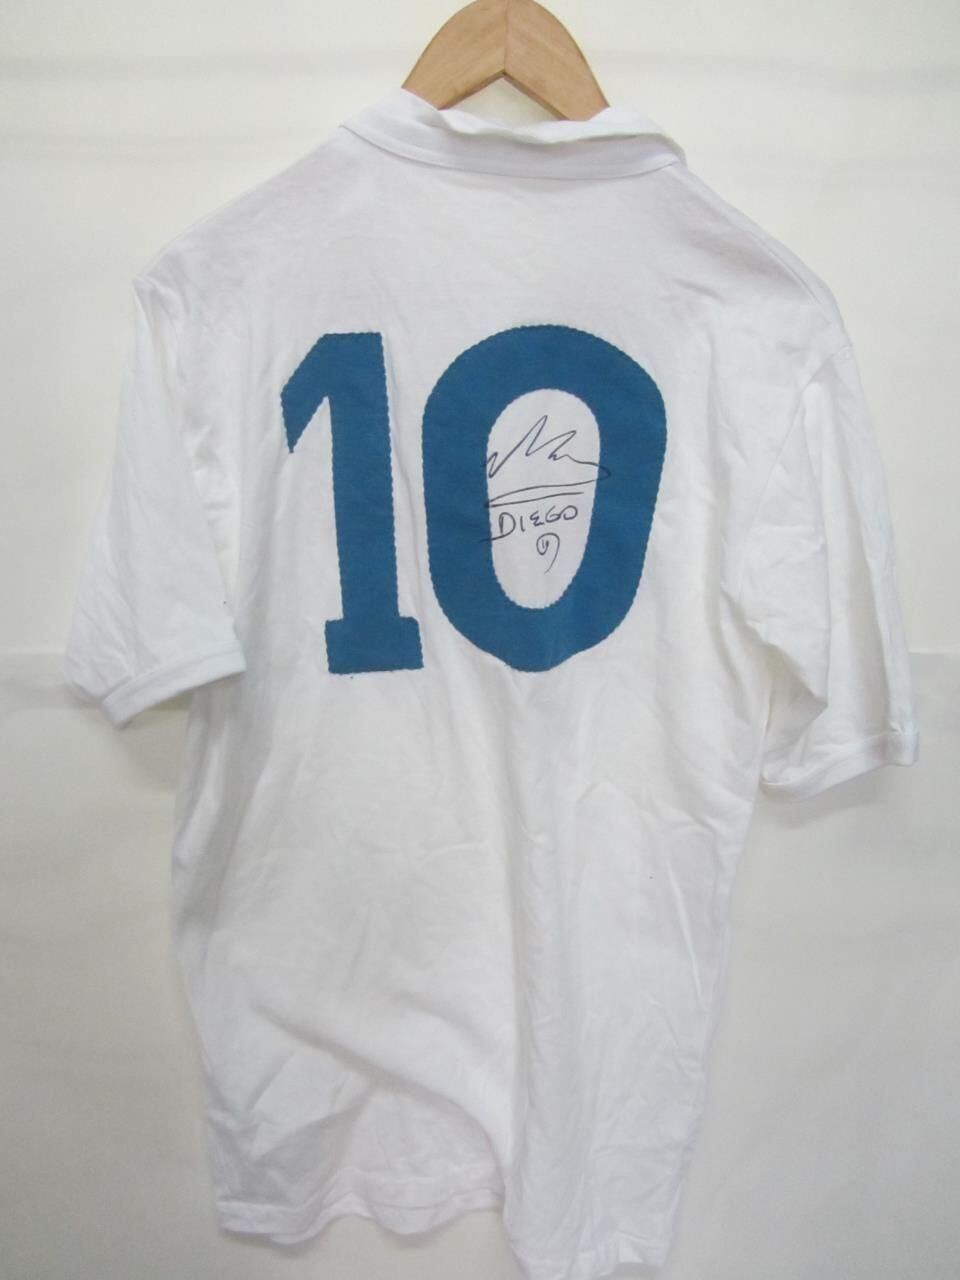 Camiseta firmada por Diego Maradona es el premio del torneo